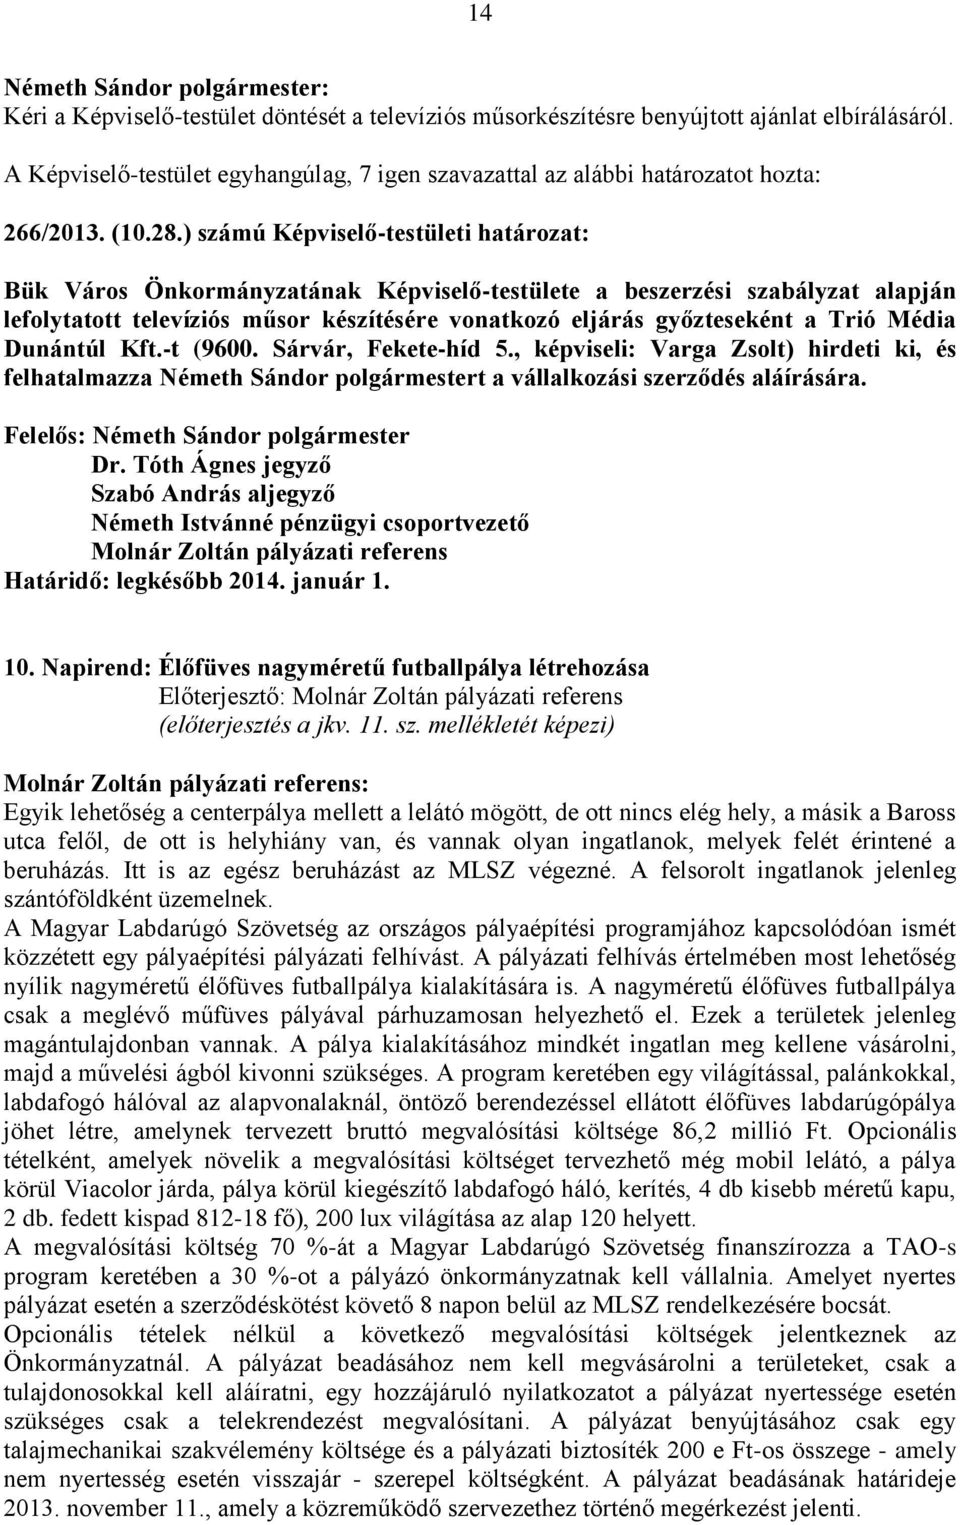 Média Dunántúl Kft.-t (9600. Sárvár, Fekete-híd 5., képviseli: Varga Zsolt) hirdeti ki, és felhatalmazza Németh Sándor polgármestert a vállalkozási szerződés aláírására.